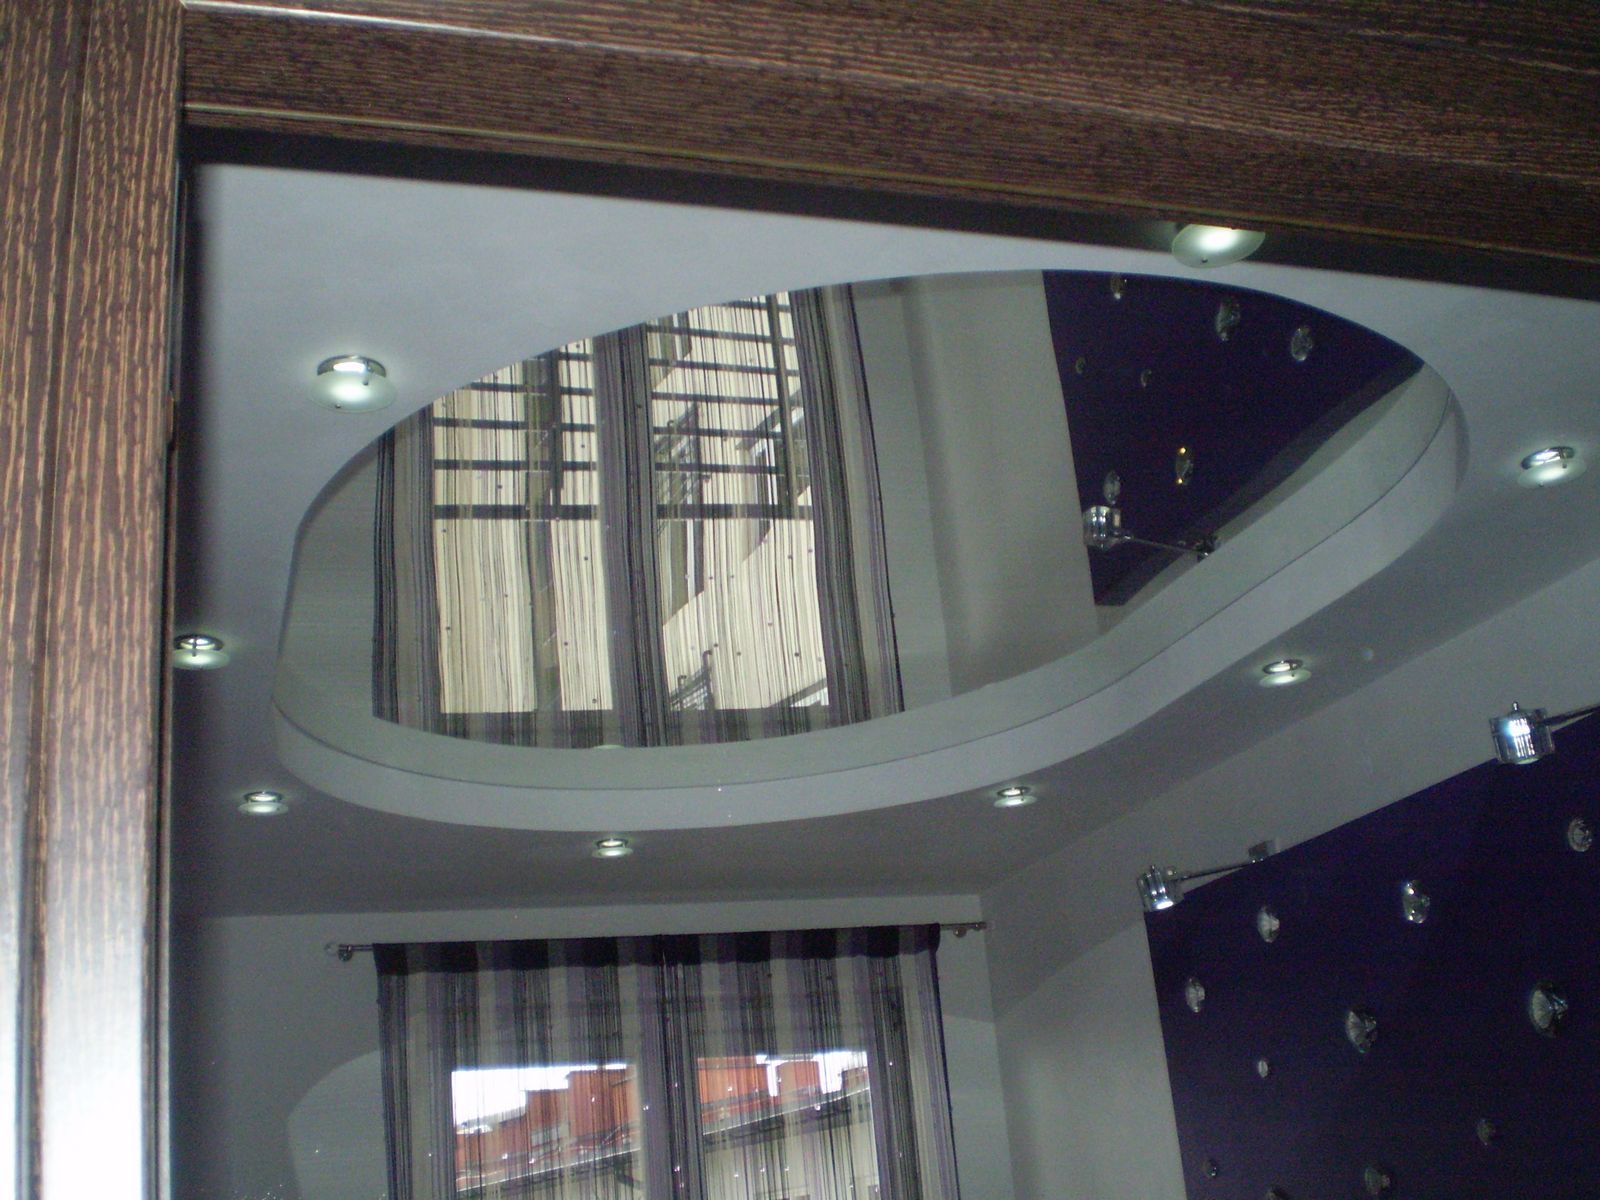 Натяжной потолок из полистирола прекрасно имитирует одно большое зеркало